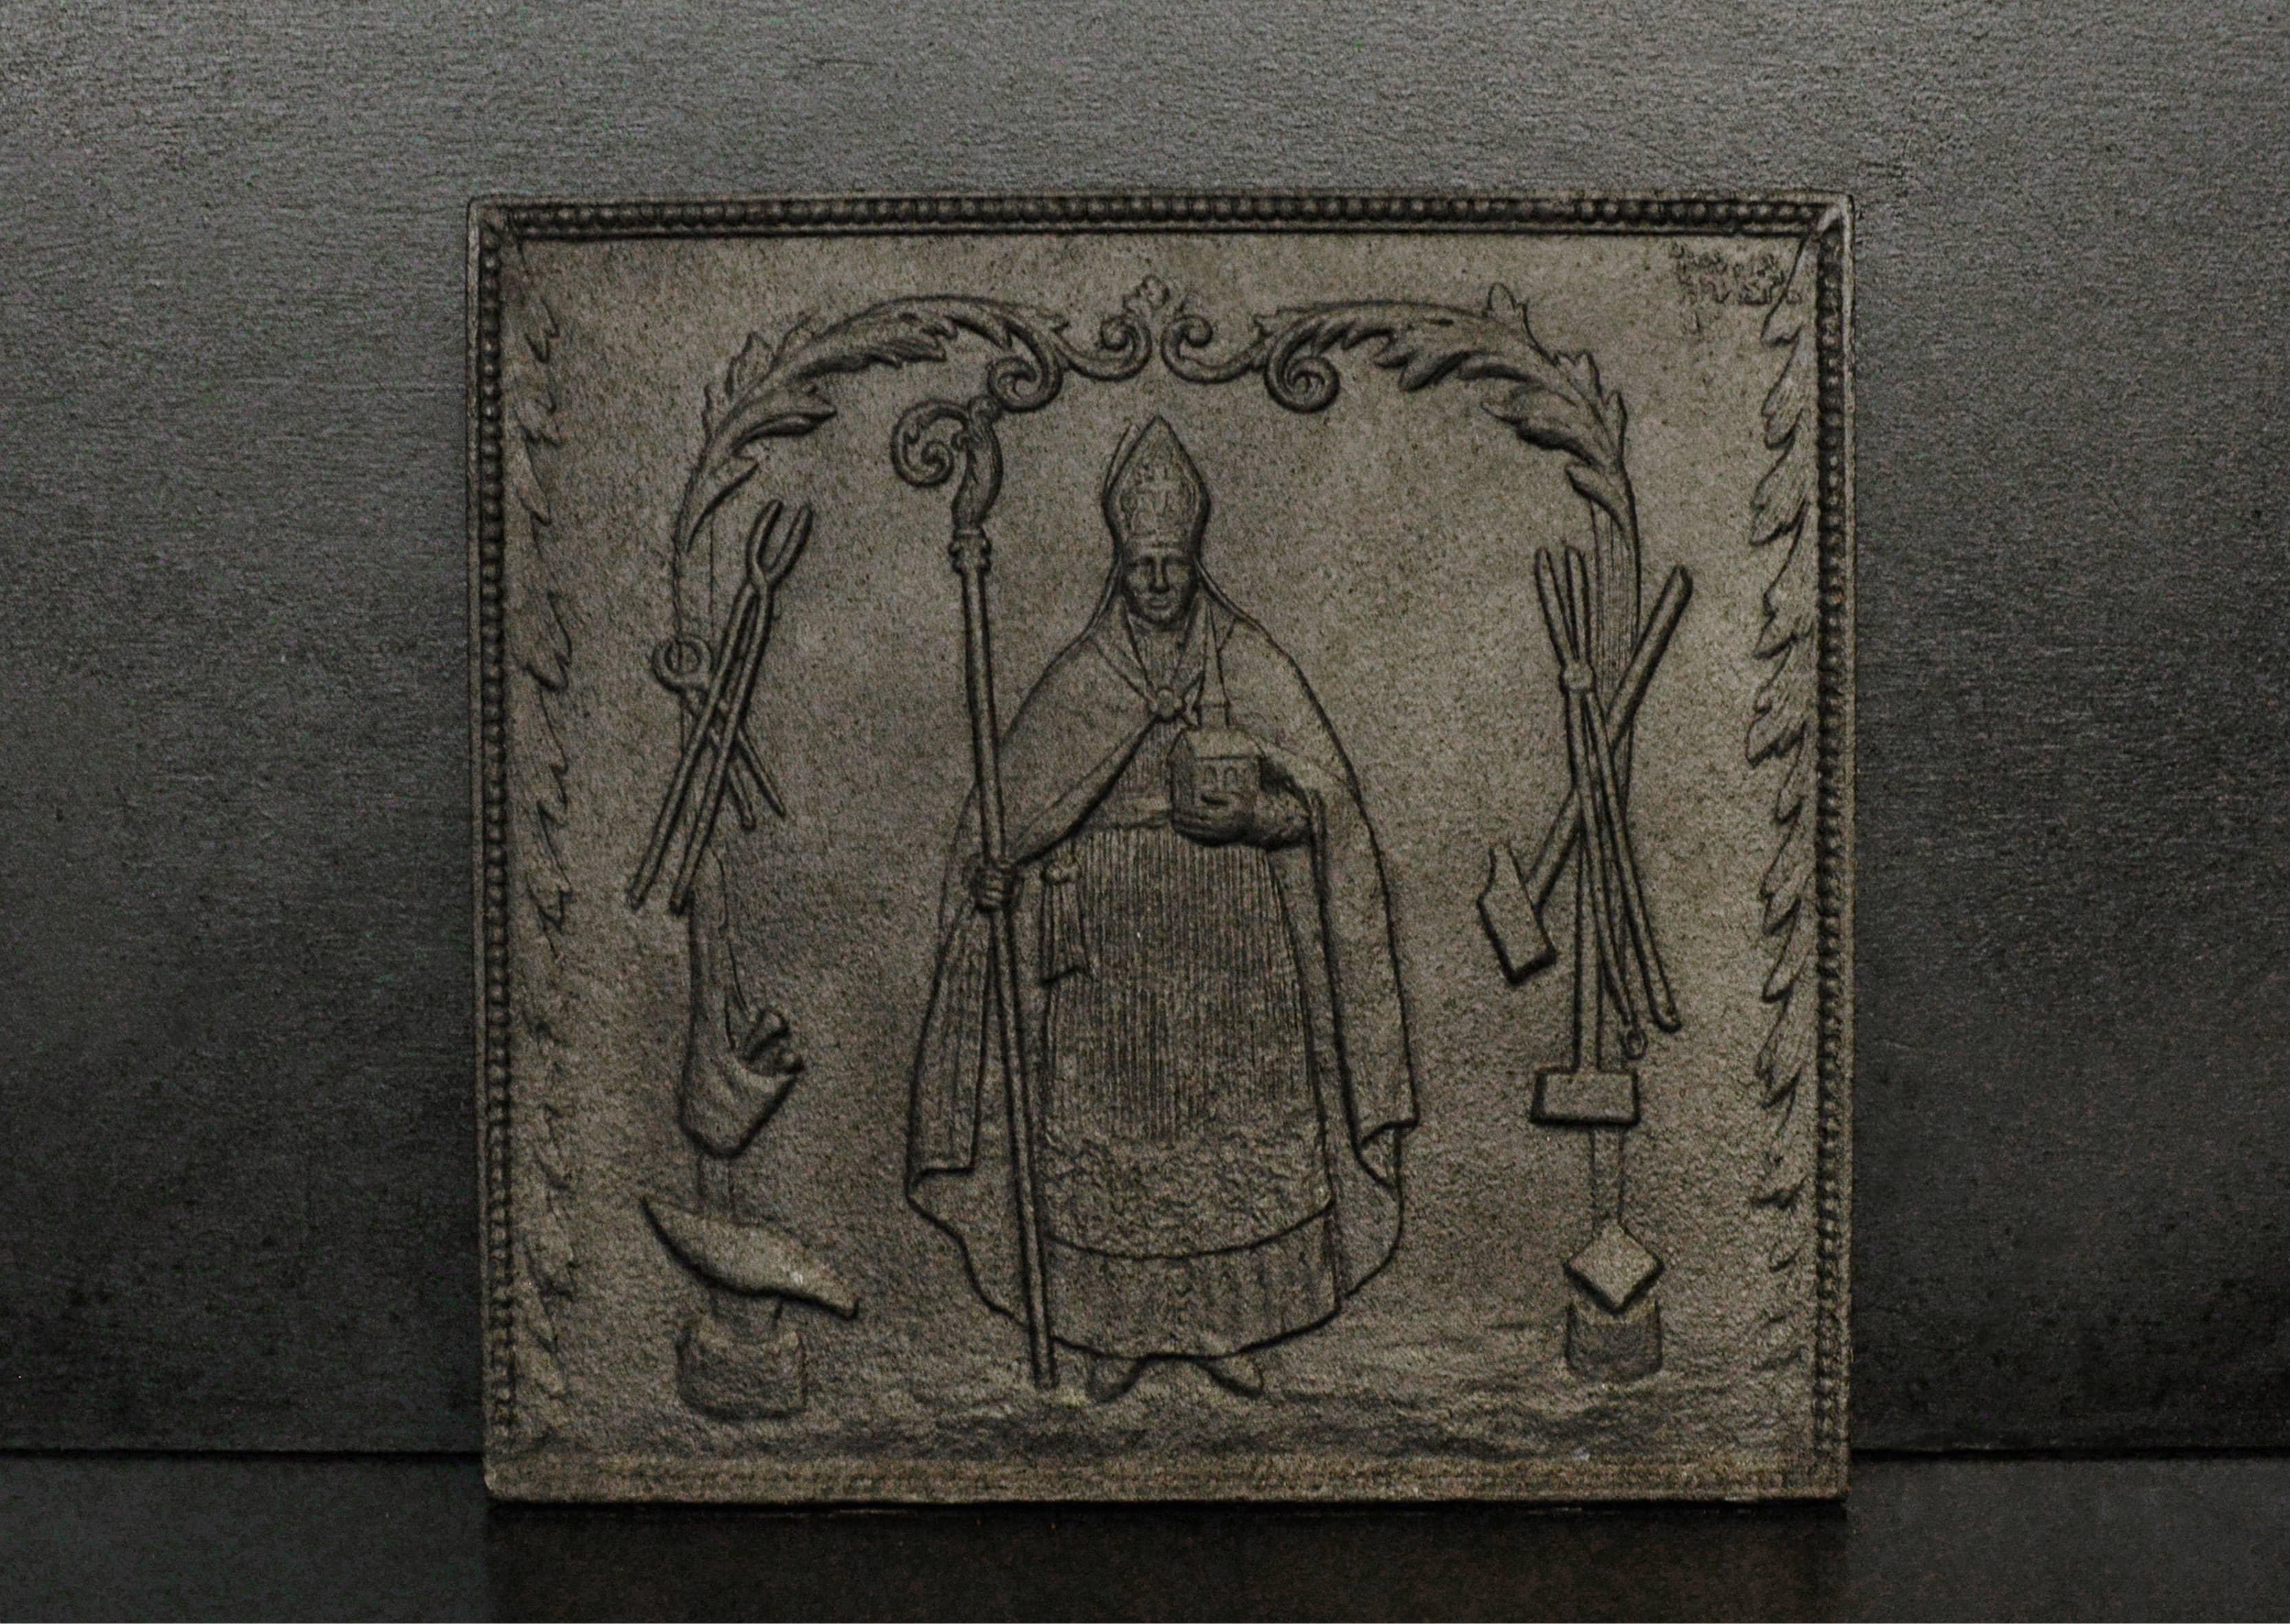 Eine englische gusseiserne Rückwand mit einer katholischen Figur in der Mitte, Blattwerk und Perlen am äußeren Rand.

Maße: Höhe: 475 mm 18 ¾